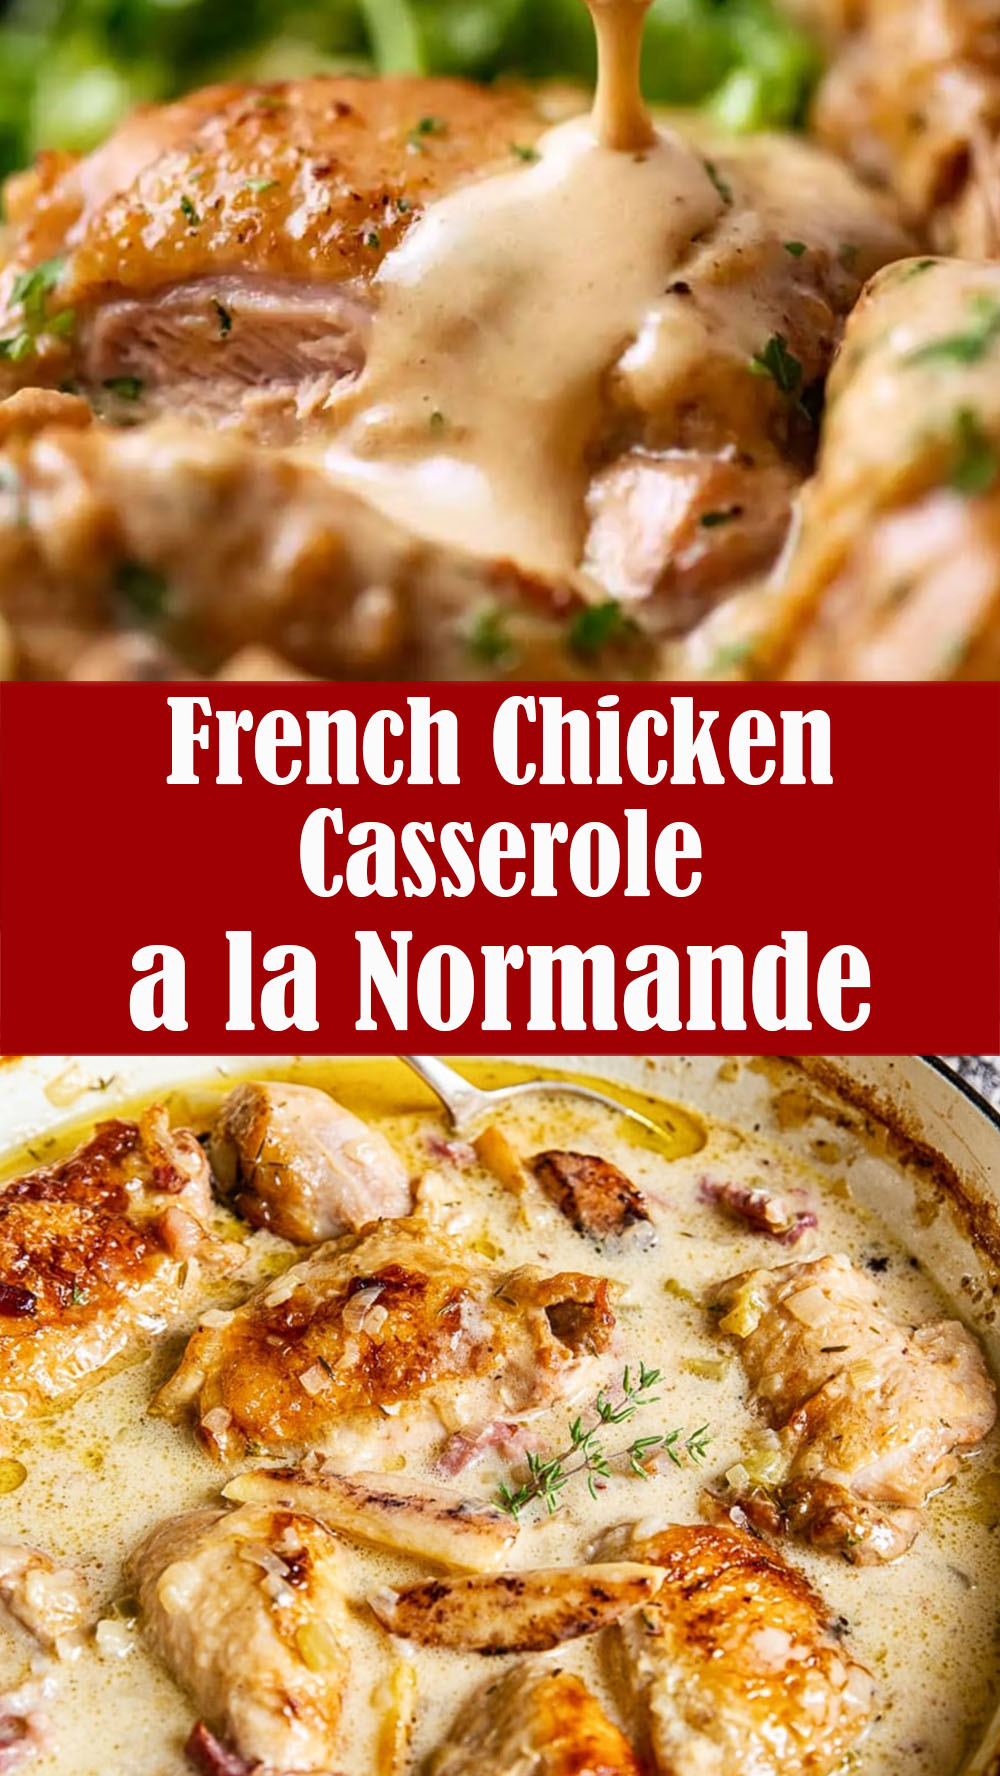 French Chicken Casserole a la Normande